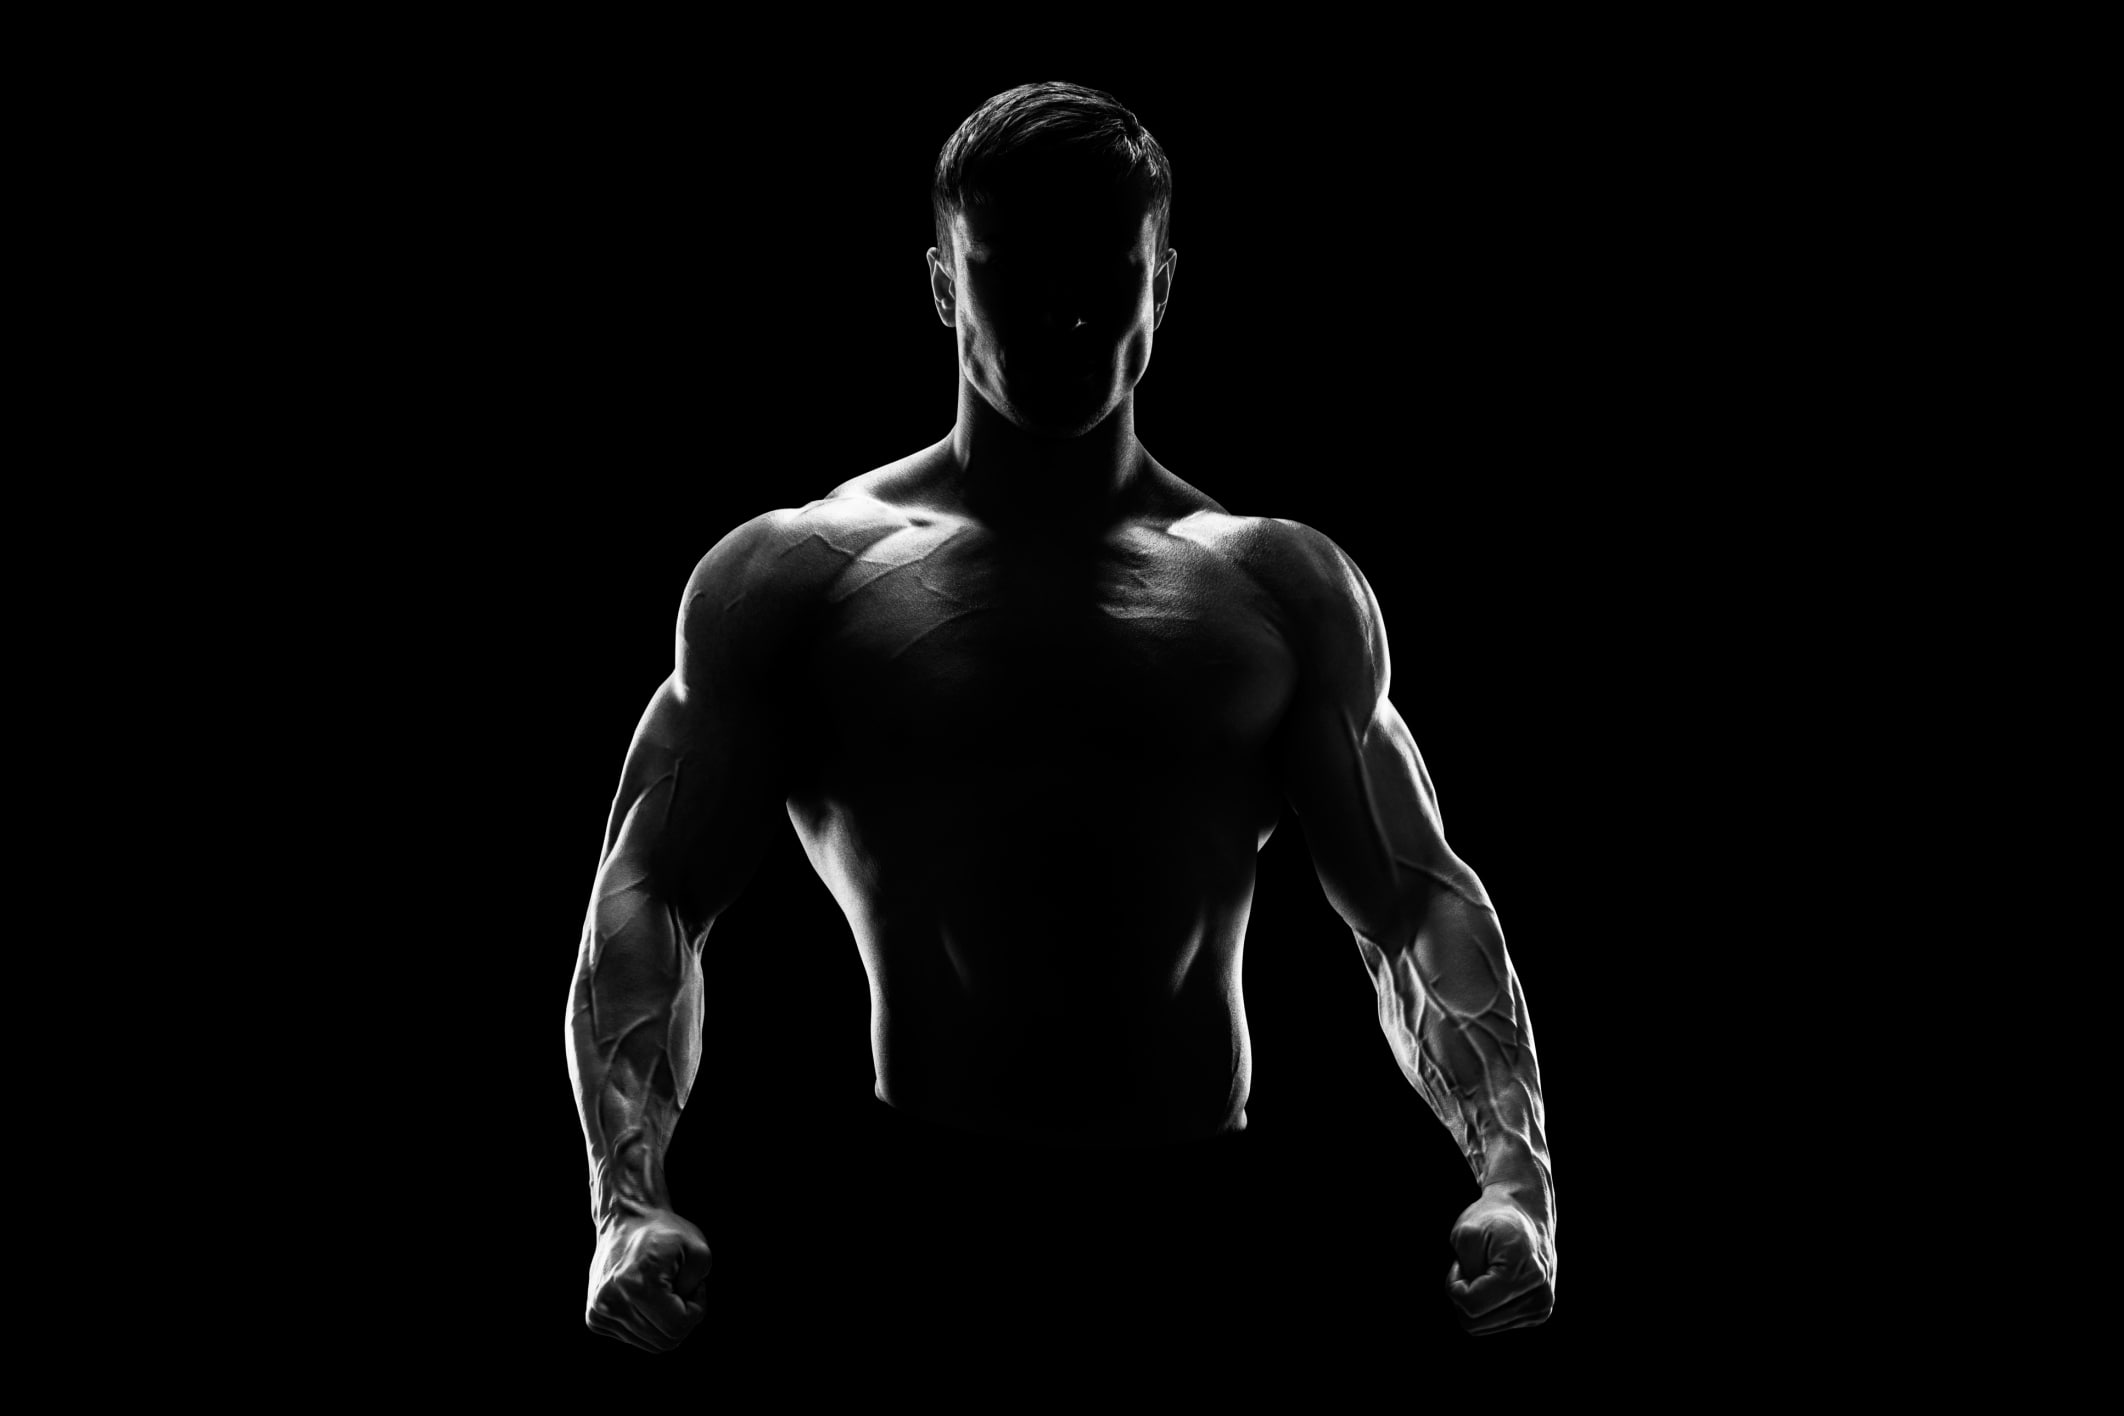 man portrait photo, silhouette, fitness, muscular Build, men